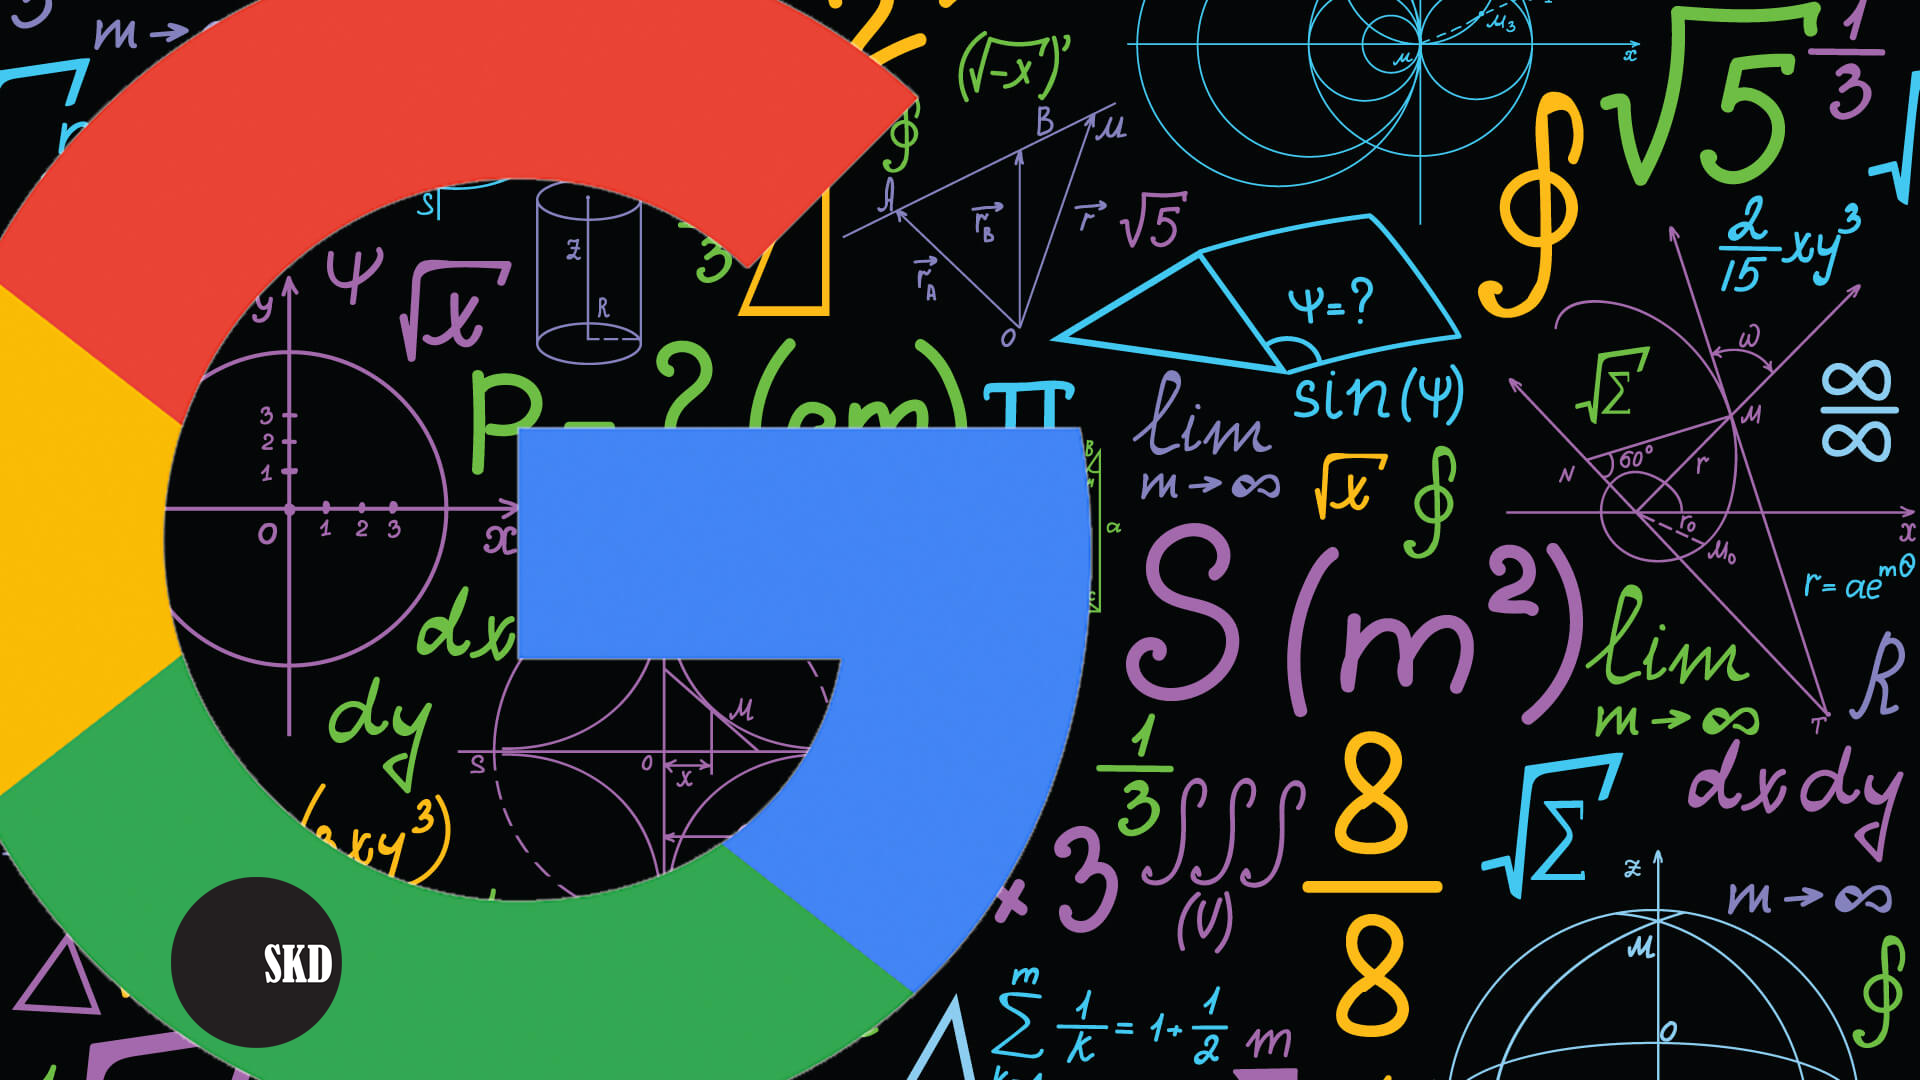 9 thuật toán tìm kiếm quan trọng nhất của Google